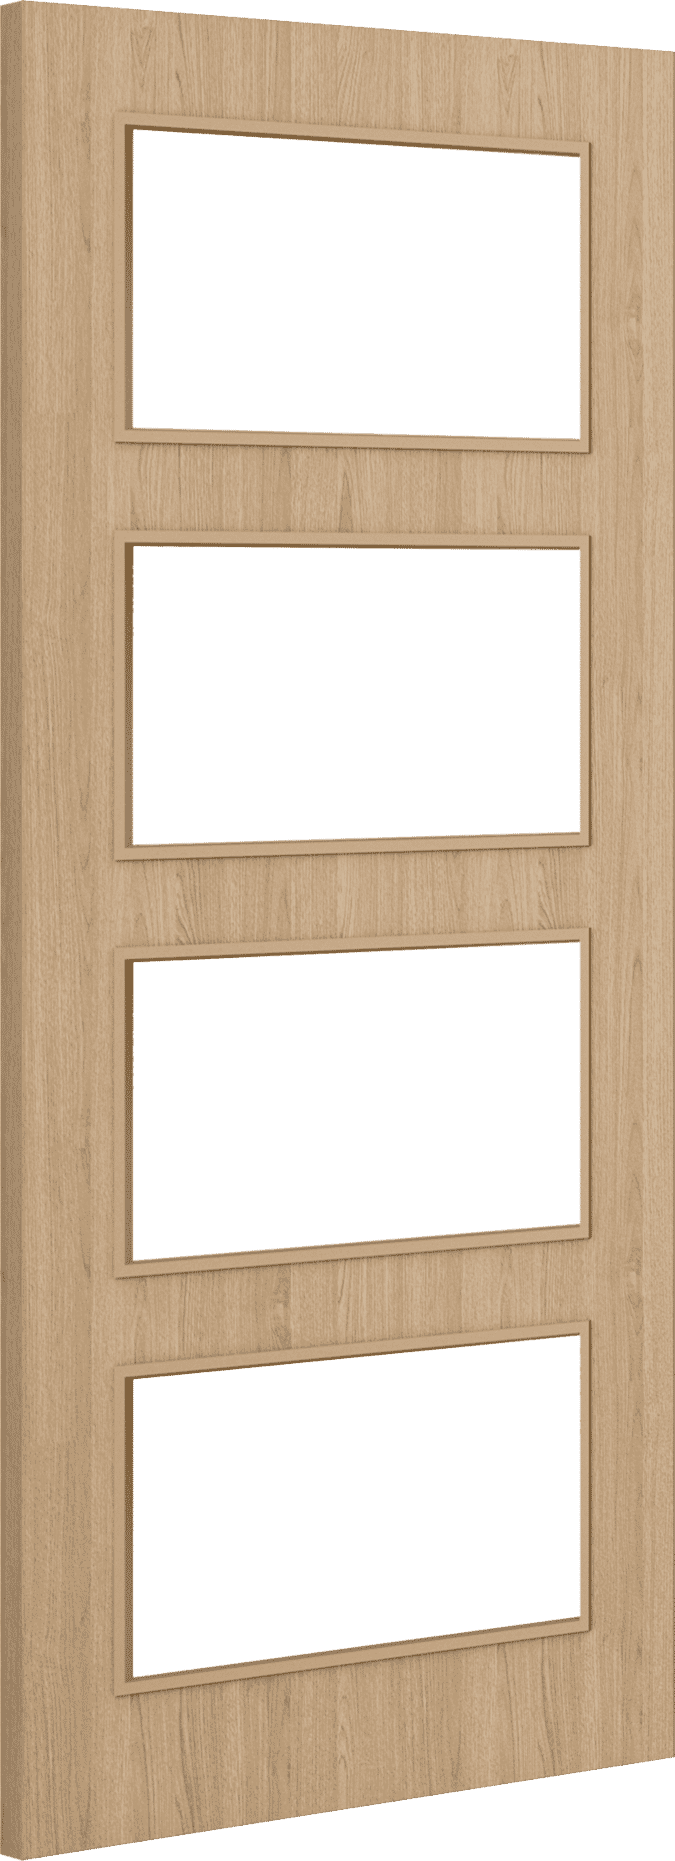 1981mm x 686mm x 44mm (27") Architectural Oak 04 Clear Glazed - Prefinished FD30 Fire Door Blank